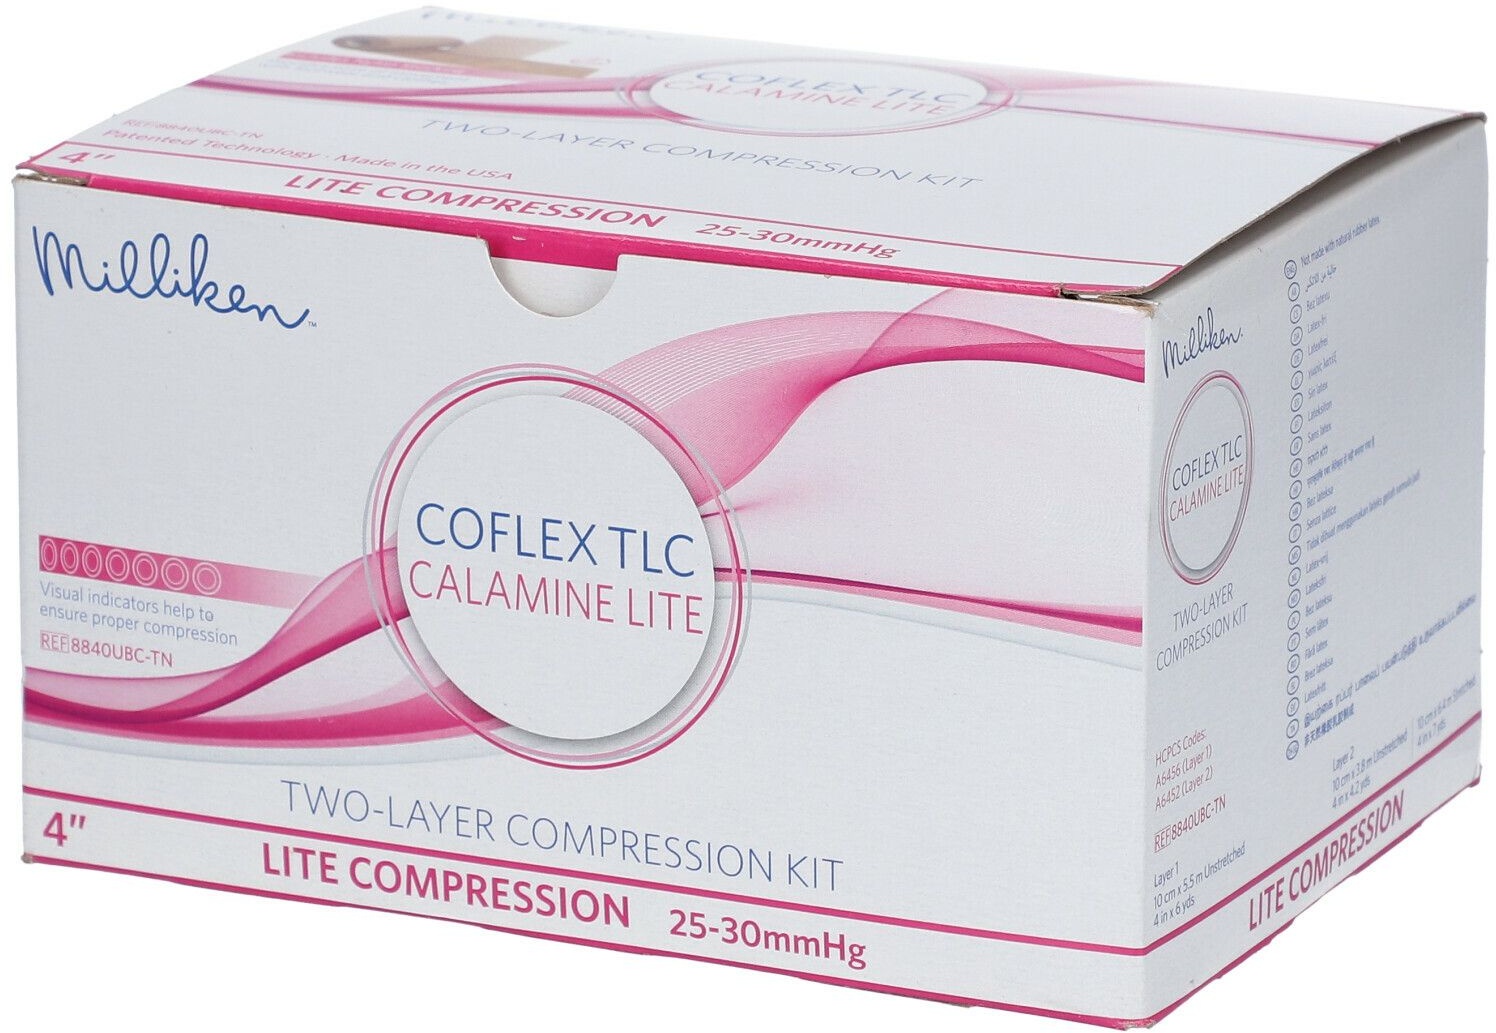 CoFlex® TLC Calamine Lite 2-Schicht-Kompimierung mit Kalamin 25-30 mmHg